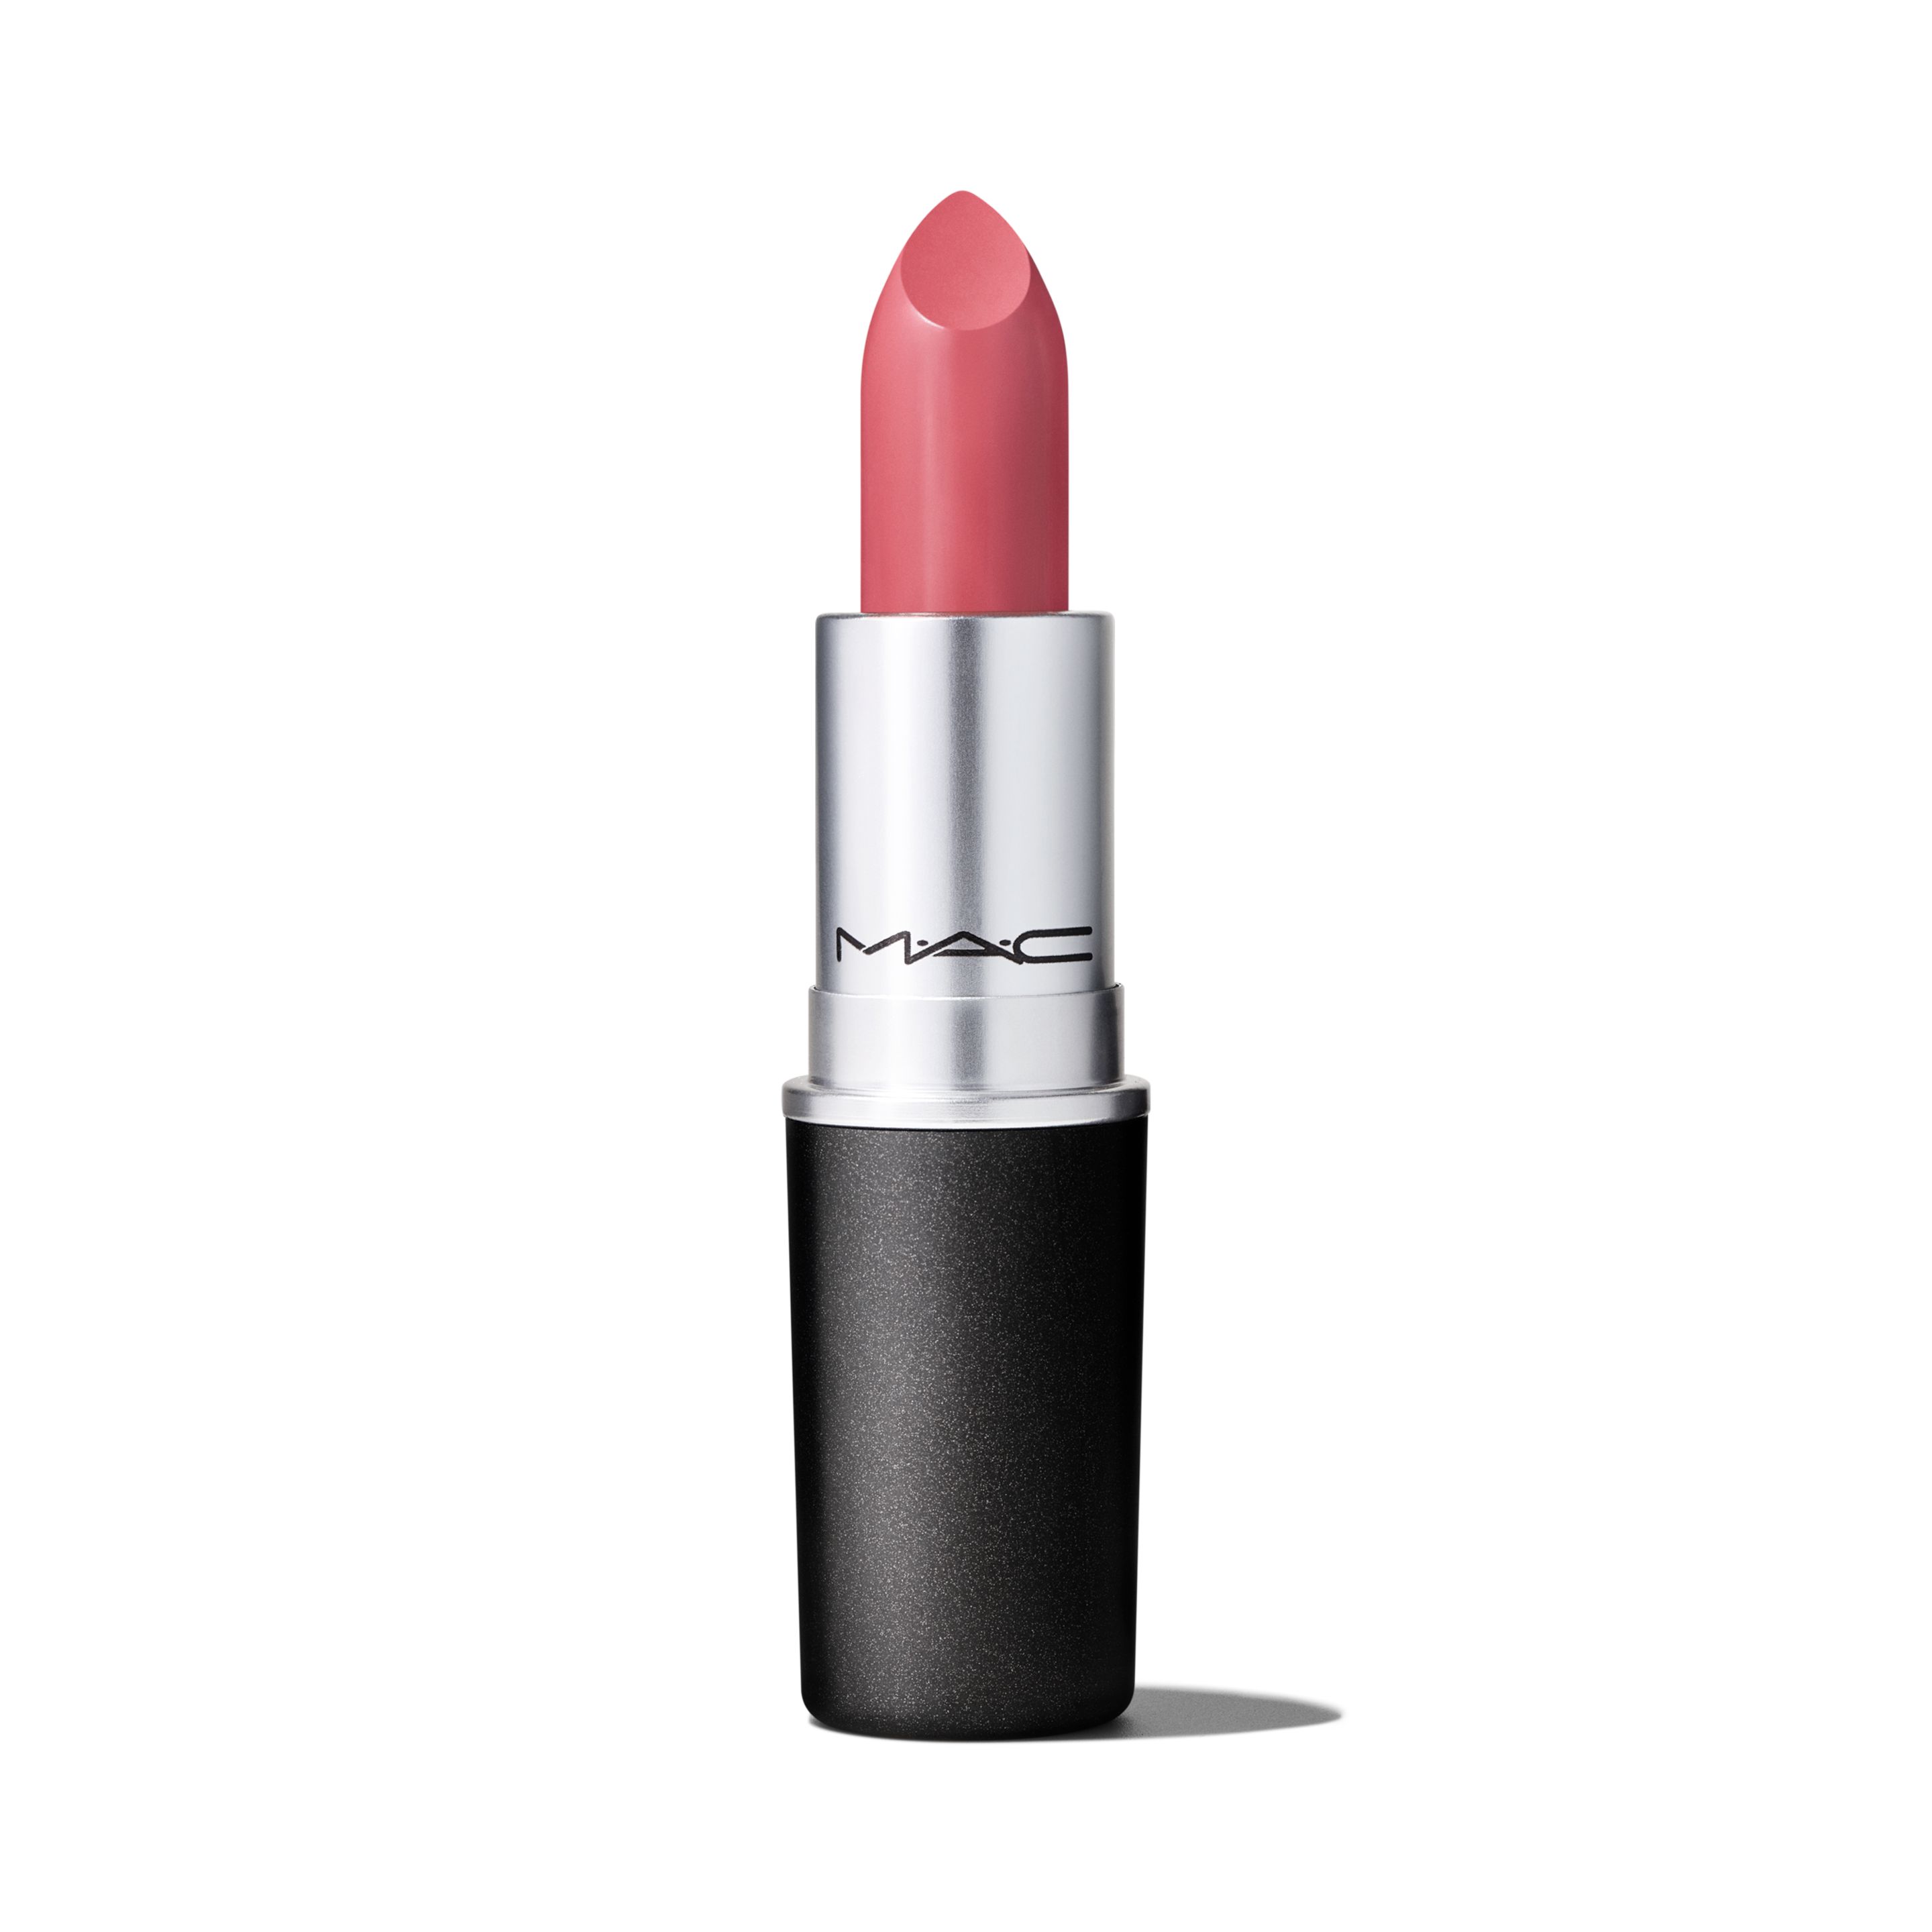 Помада для губ MAC Cosmetics Satin Lipstick кремовая, тон Brave, 3 г я бы так никогда не сделал